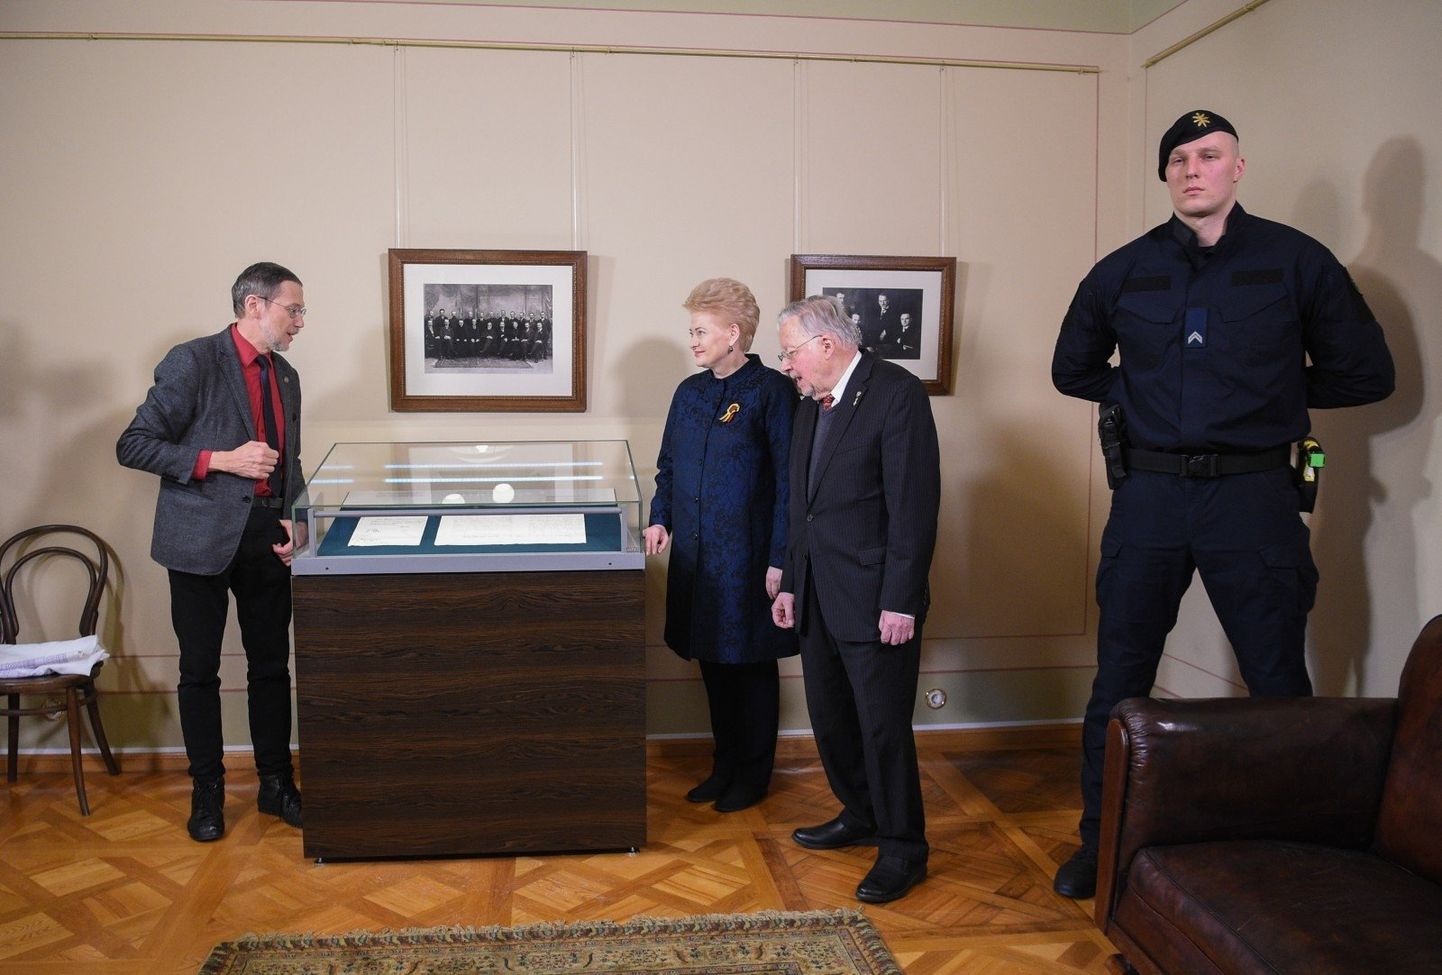 Liudas Mažylis, Dalia Grybauskaitė ja Vytautas Landsbergis iseseisvusdeklaratsiooni juures. Dokumenti valvab kettaheitjana tuntud Eligijus Rupšys.